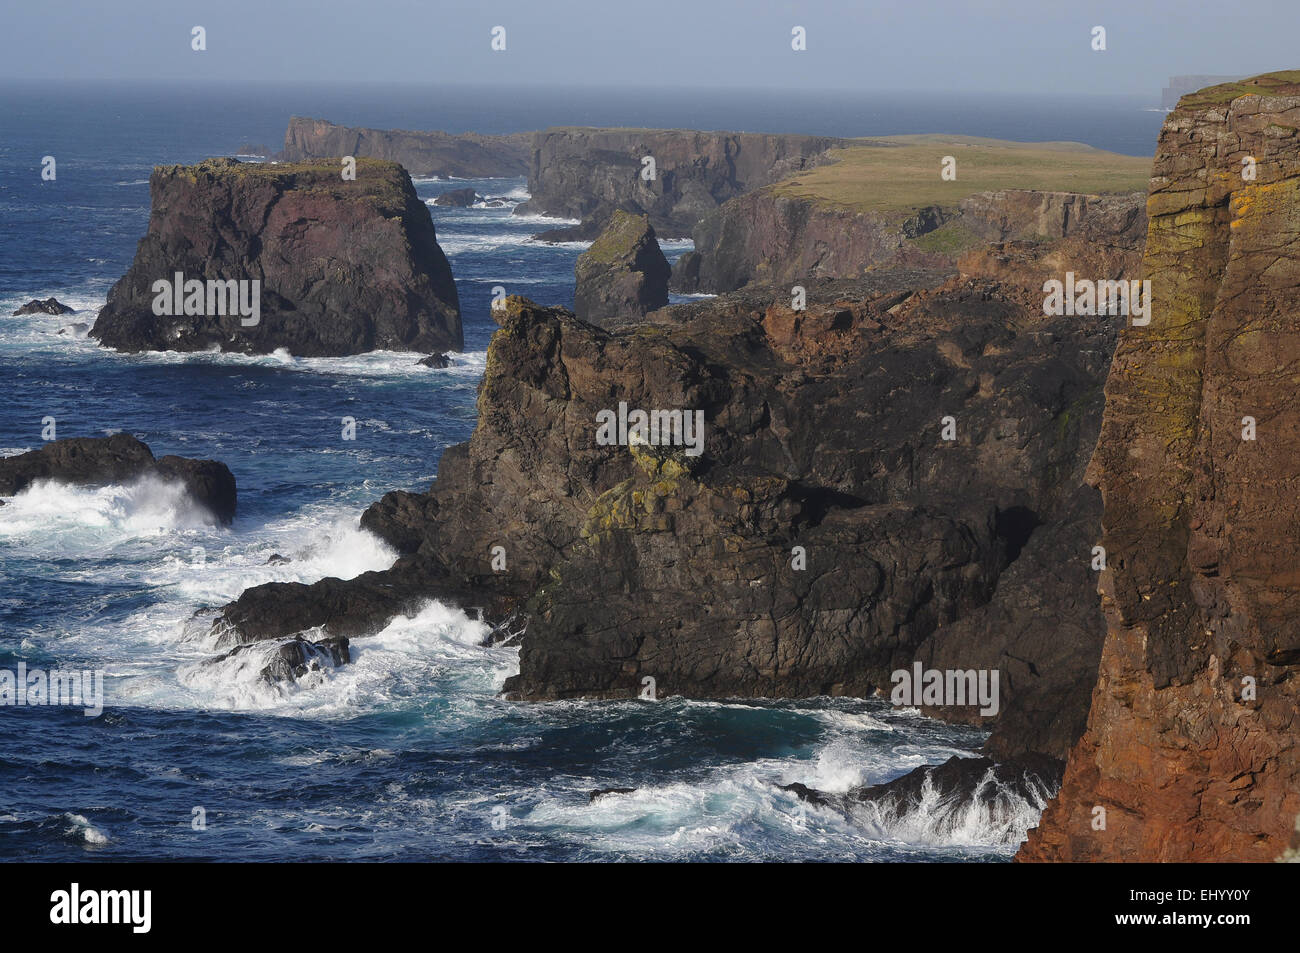 La Scozia, isole Shetland, eshaness, continentale, west coast, Atlantico, rocce, mare, Gran Bretagna, Europa Foto Stock